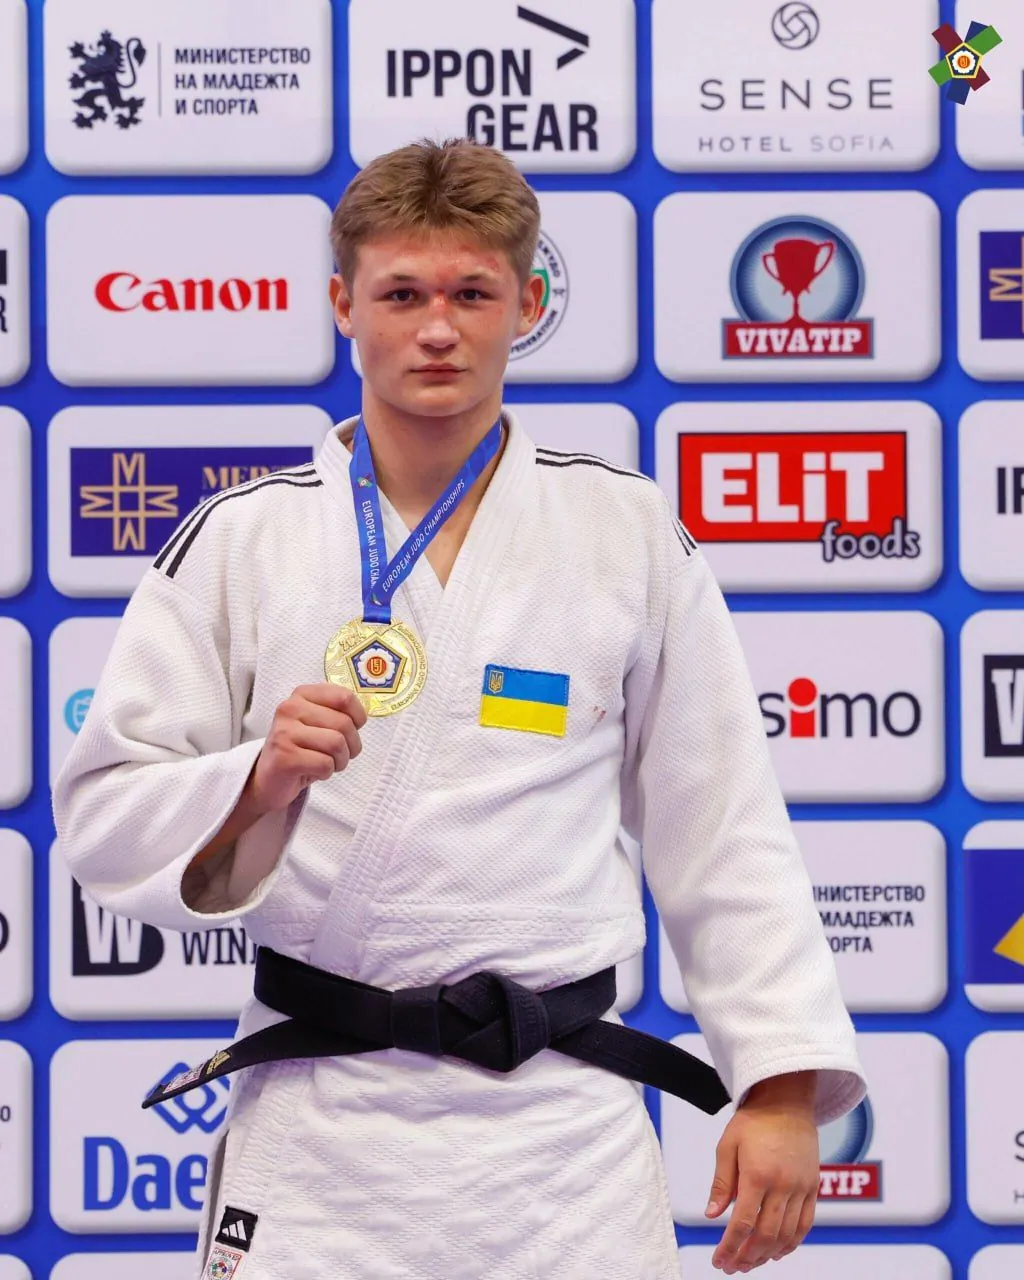 ukrainian-judokas-performed-brilliantly-at-the-european-cadet-championships